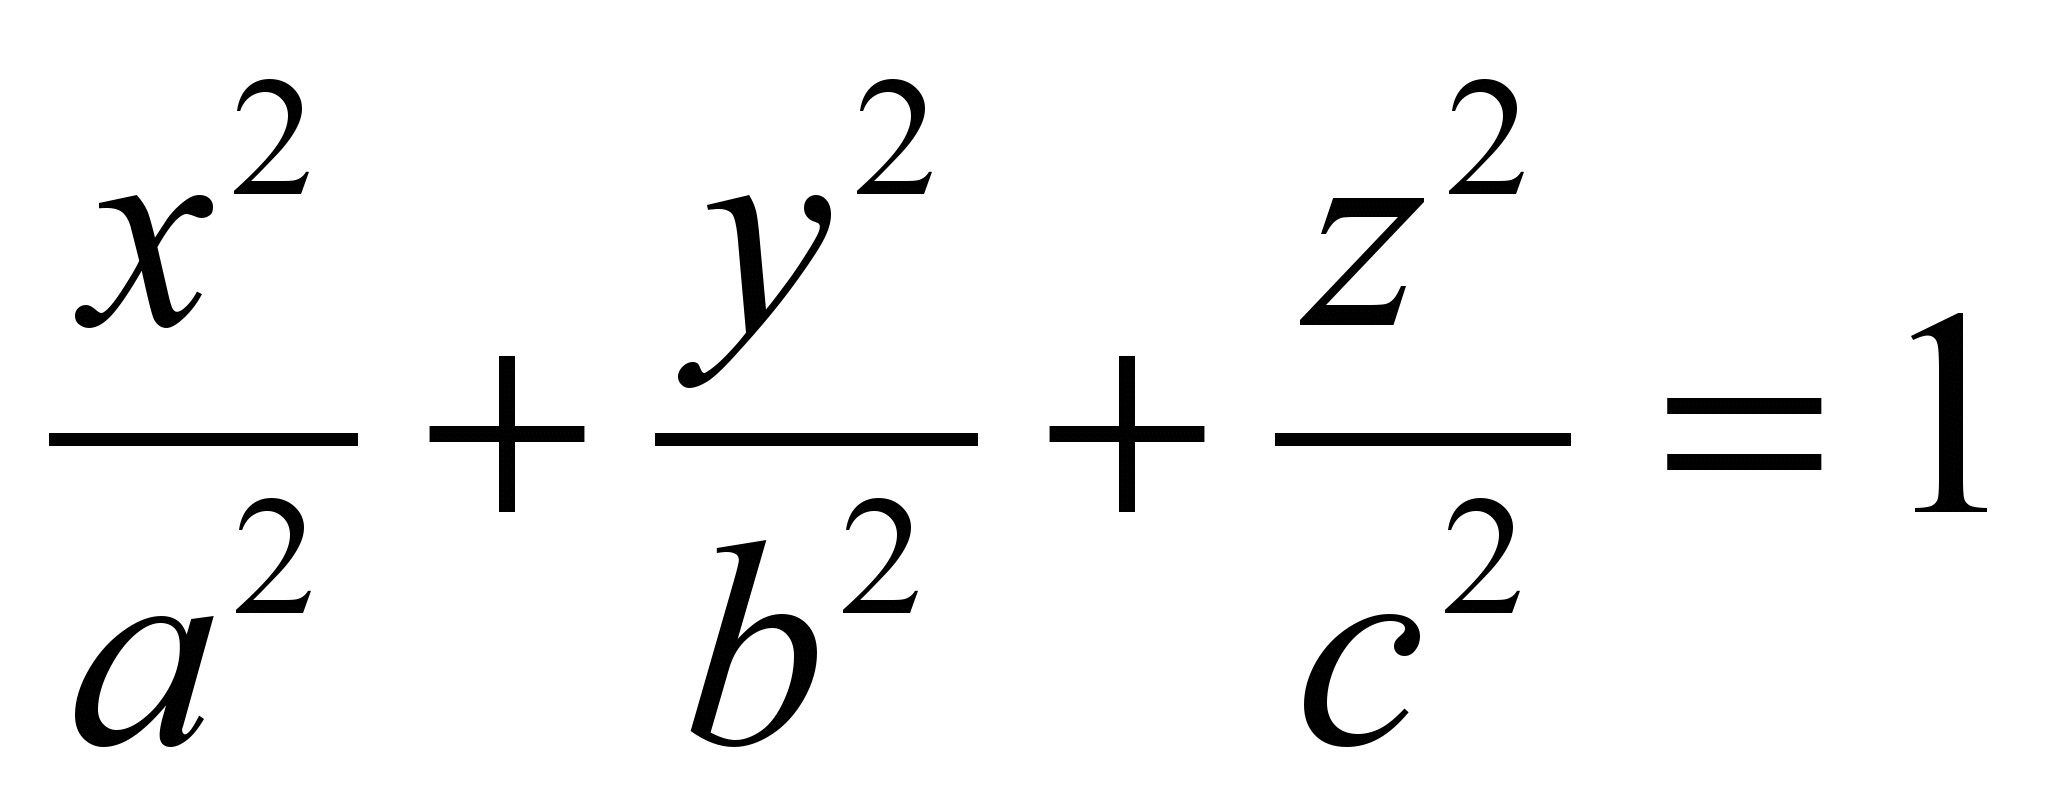 Y 2 2a 2a y2. Каноническое уравнение конуса. Уравнения поверхностей. Конус второго порядка. Уравнение конуса 2 порядка.